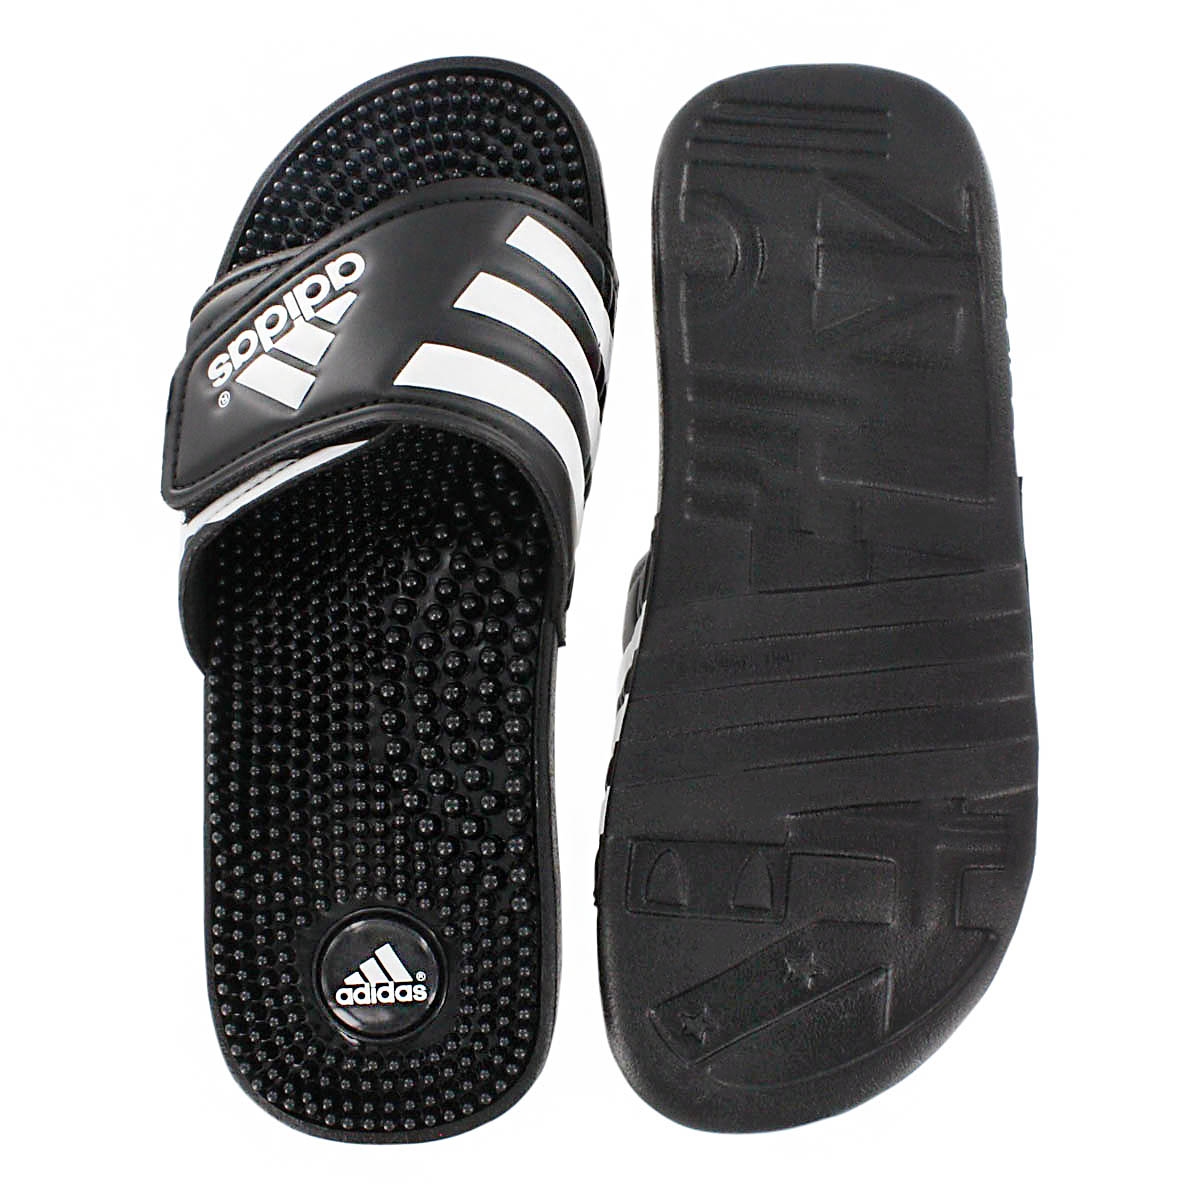 Adidas Men's Adissage Slide Sandal | eBay